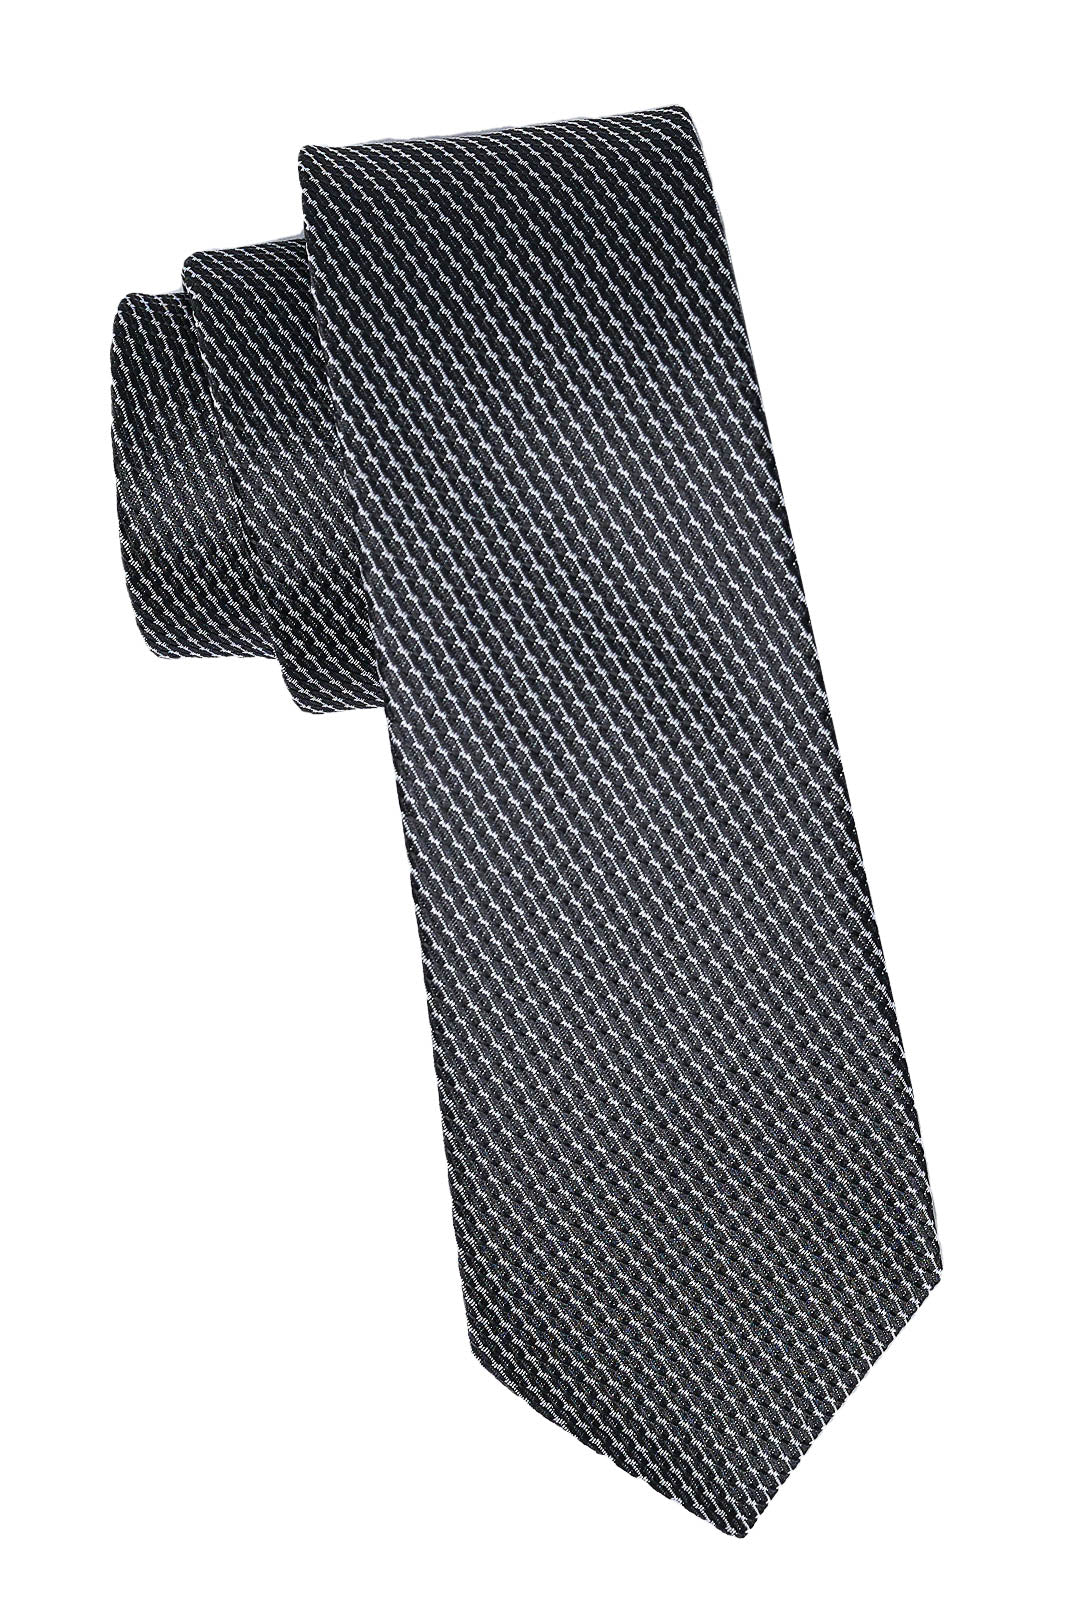 Black & Silver Tie